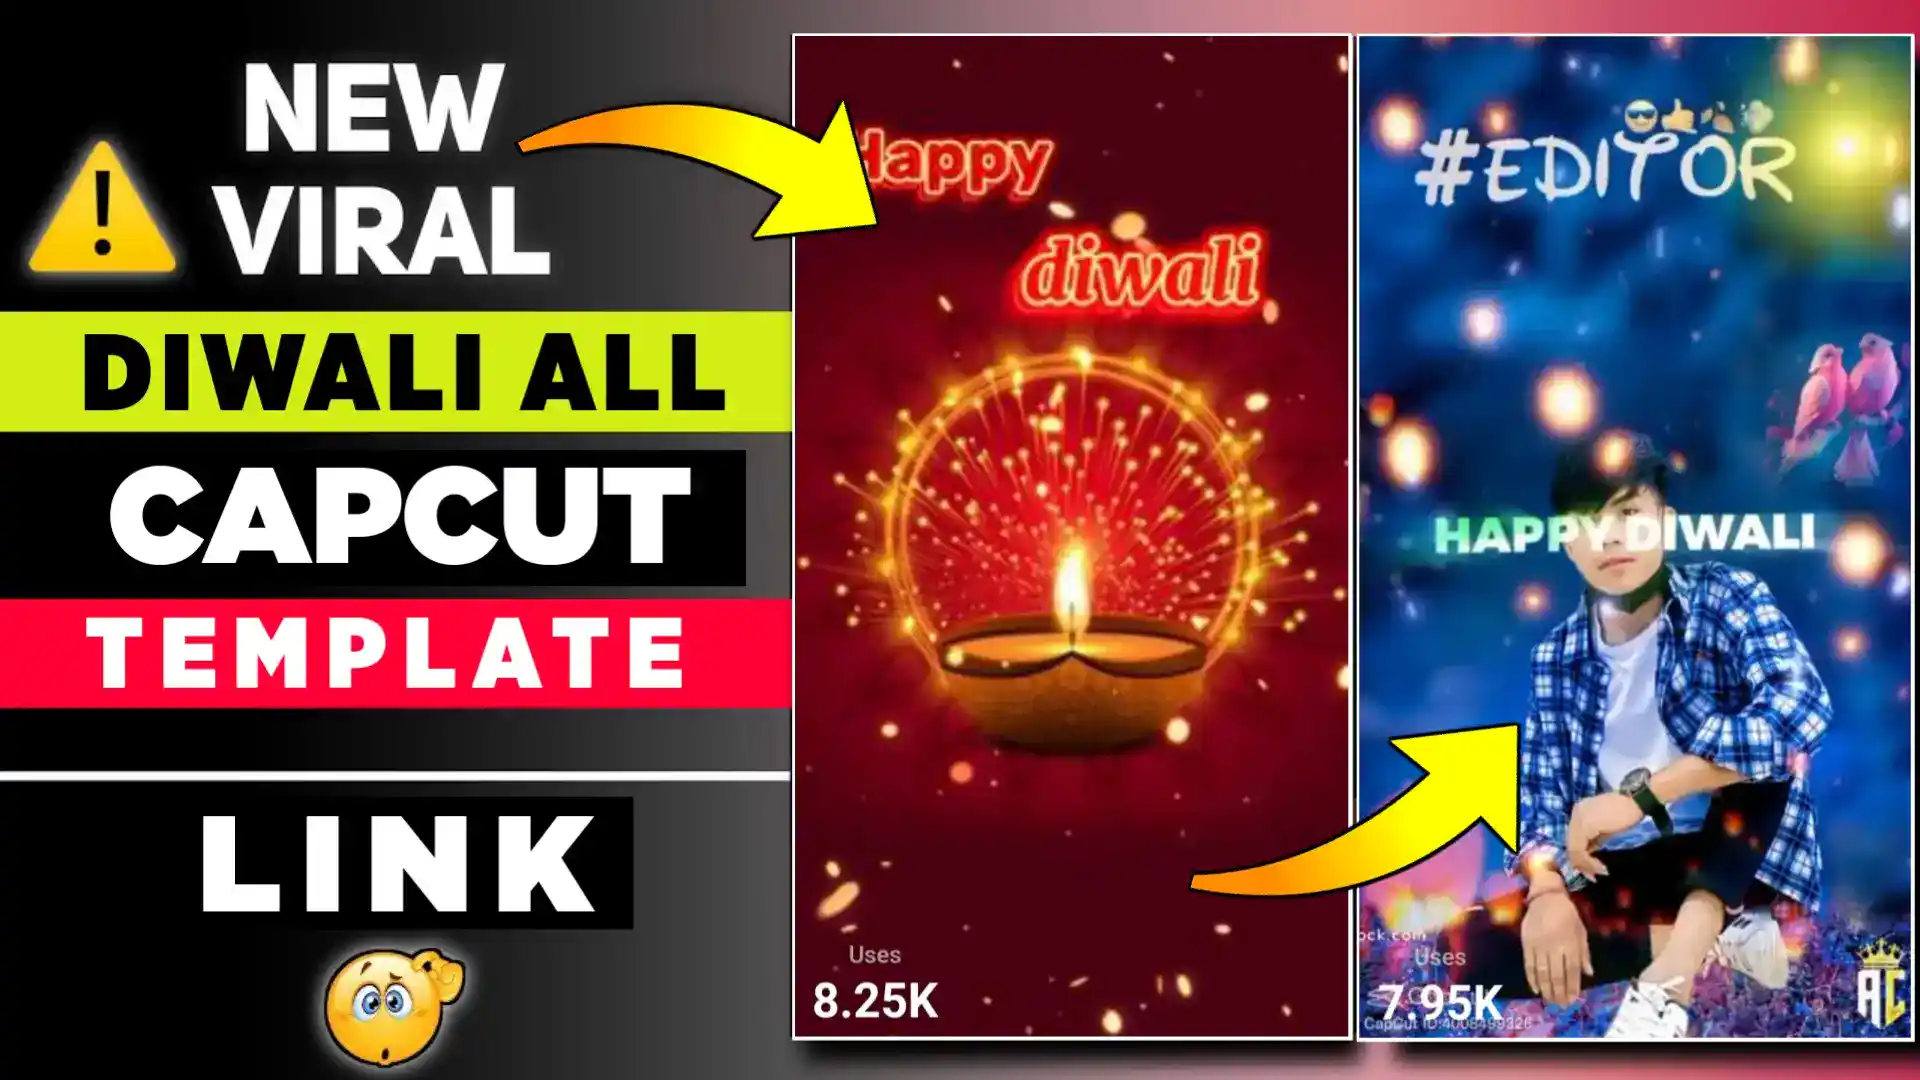 Diwali Capcut Template Link